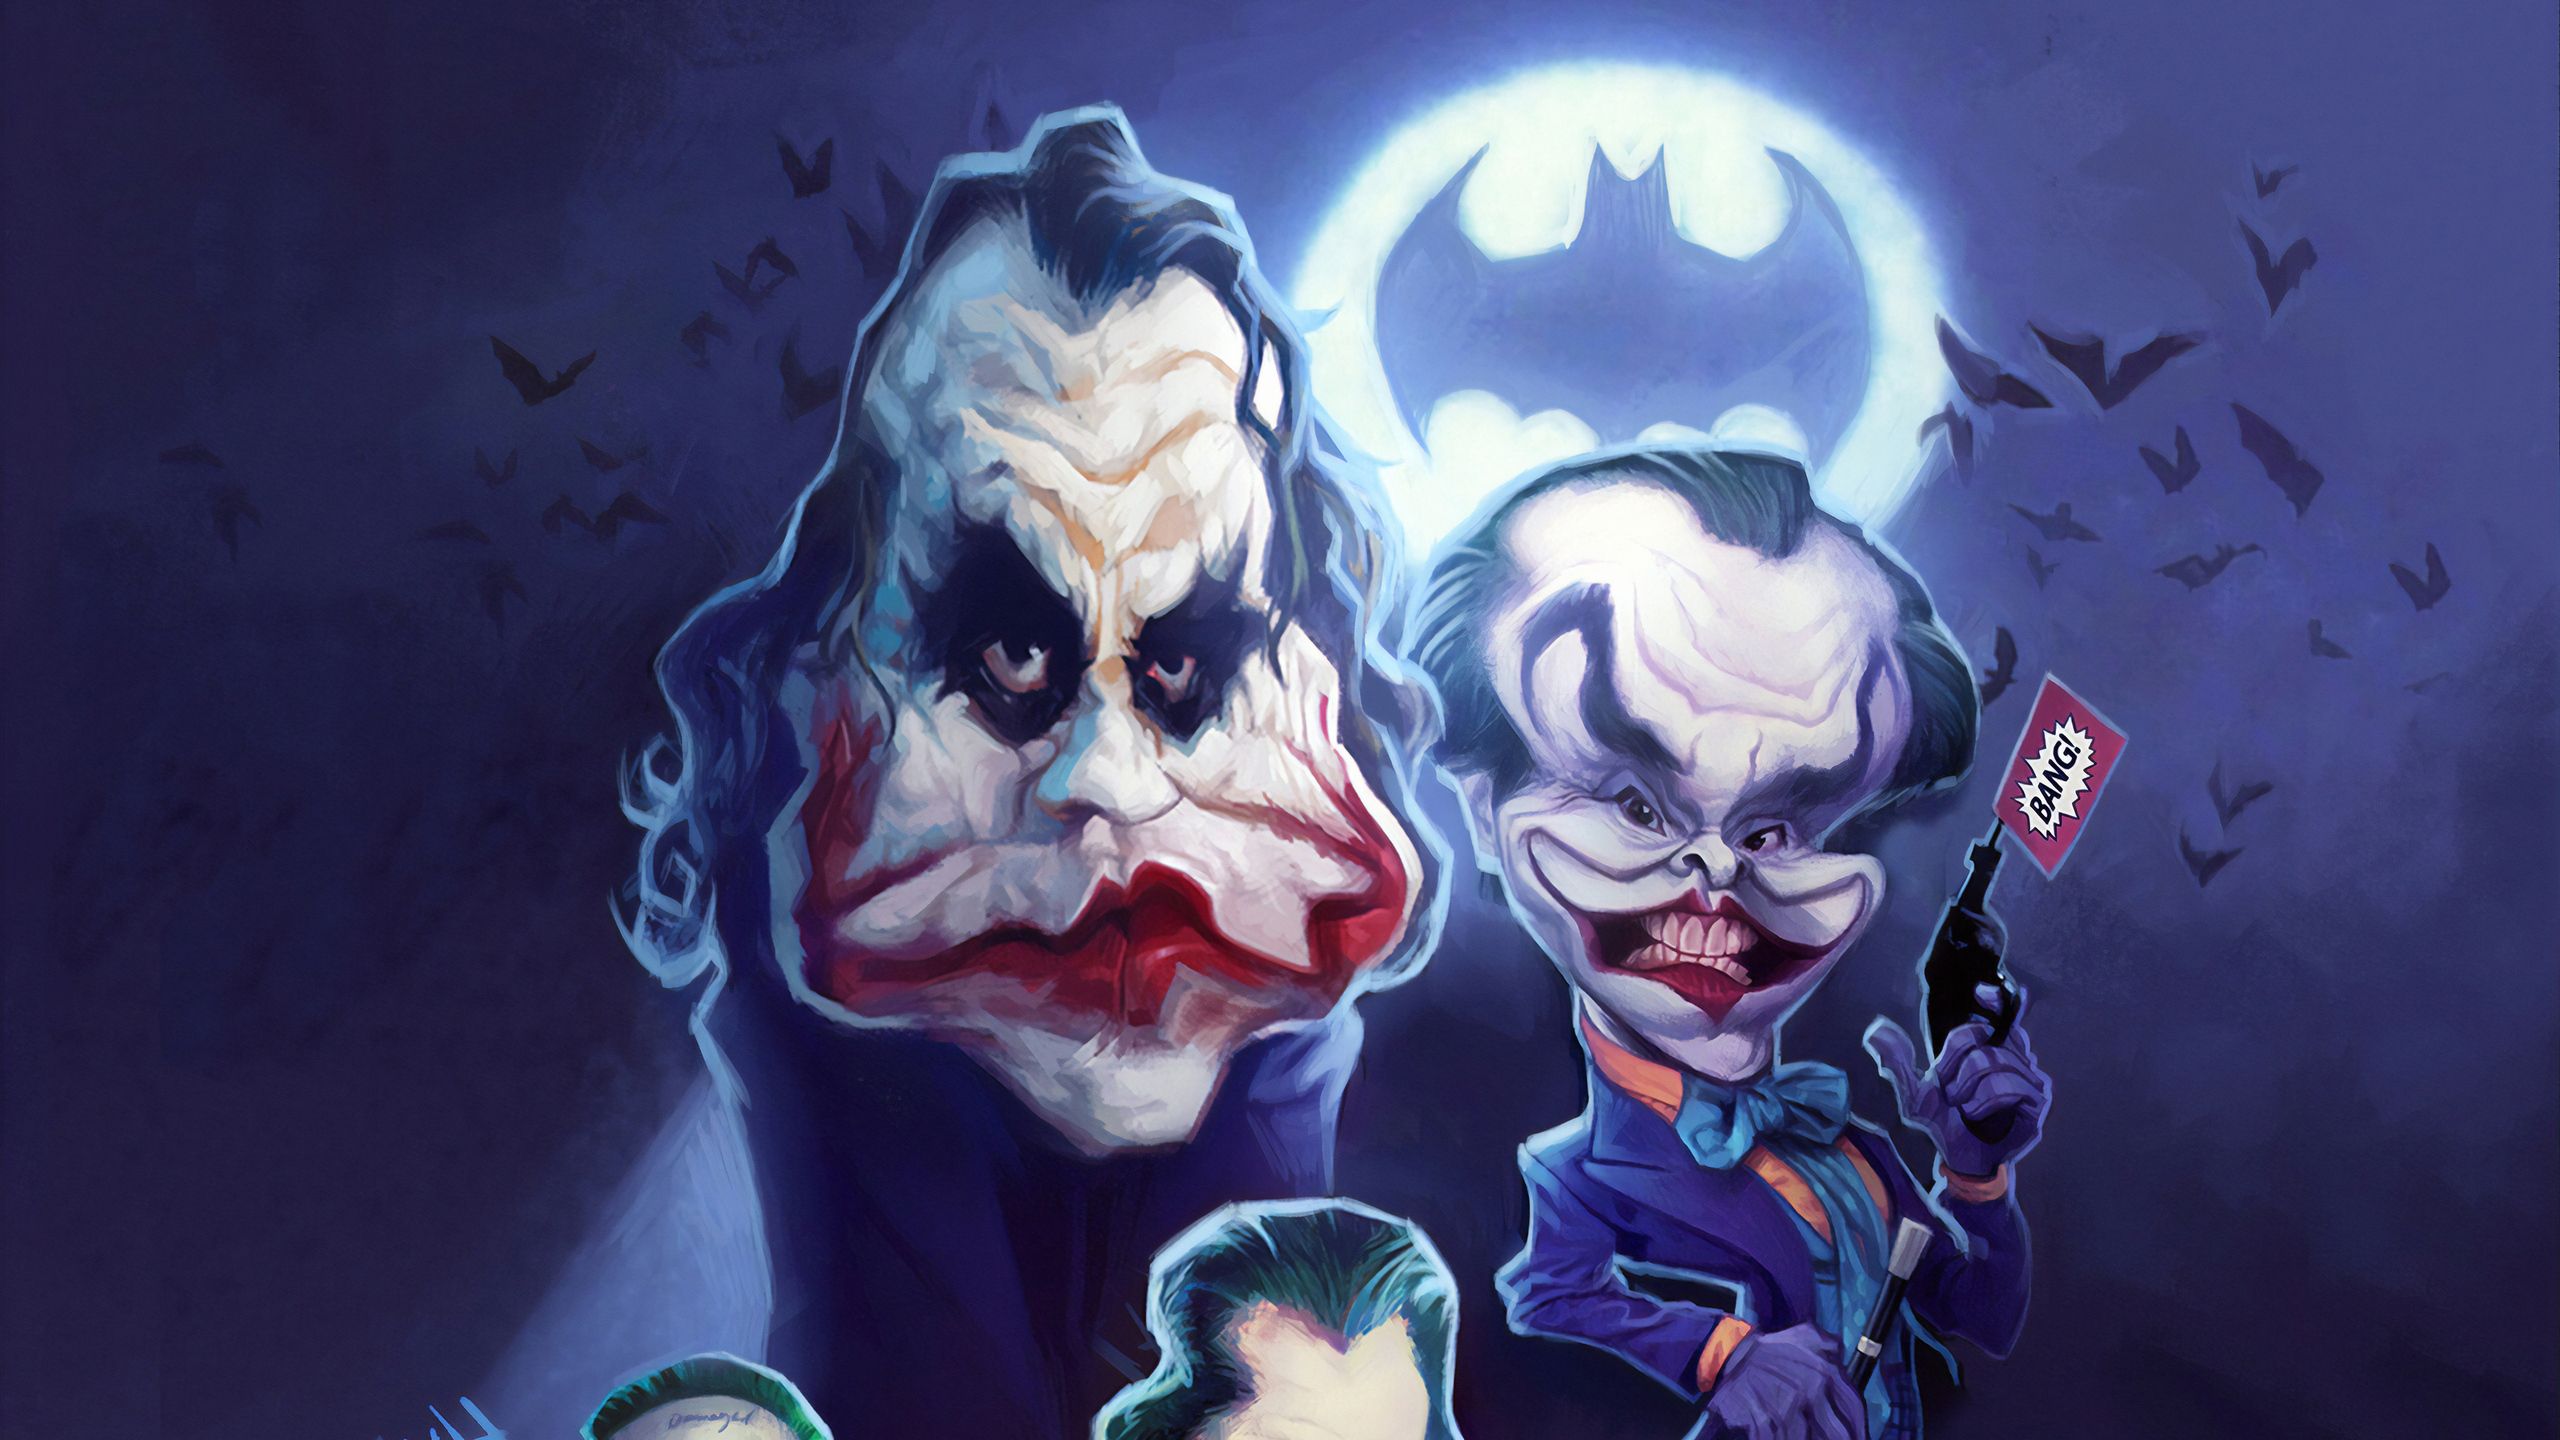 Jokers Face Art 1440P Resolution HD 4k Wallpaper